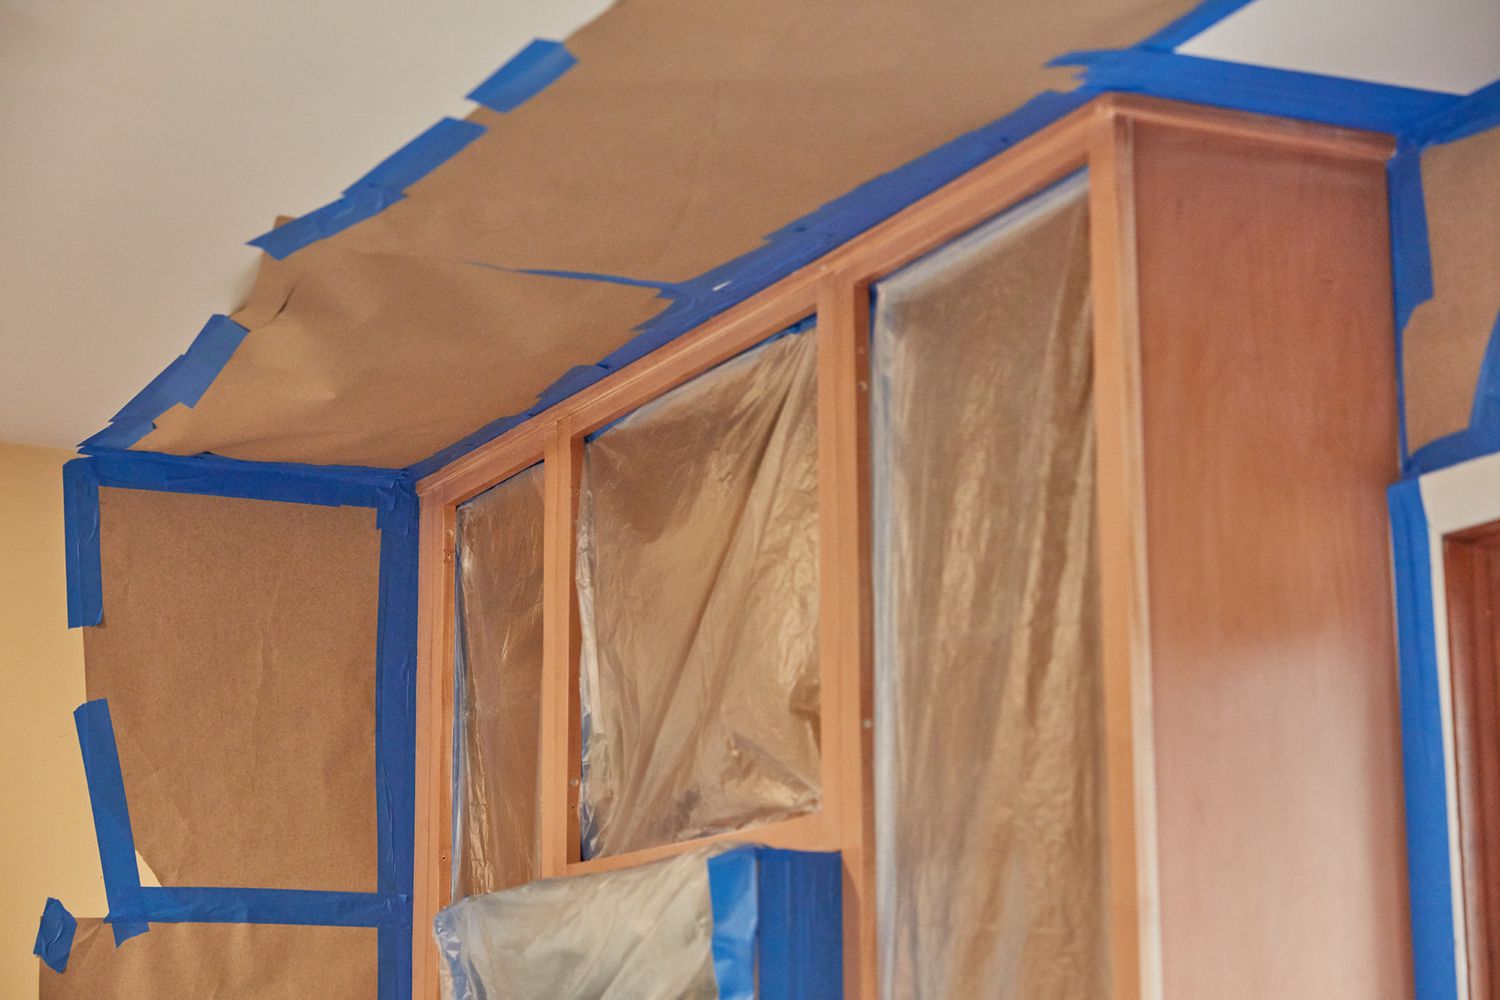 Paredes y techo de la cocina enmascarados con cinta de pintor para prohibir que se pinte sobre ellos